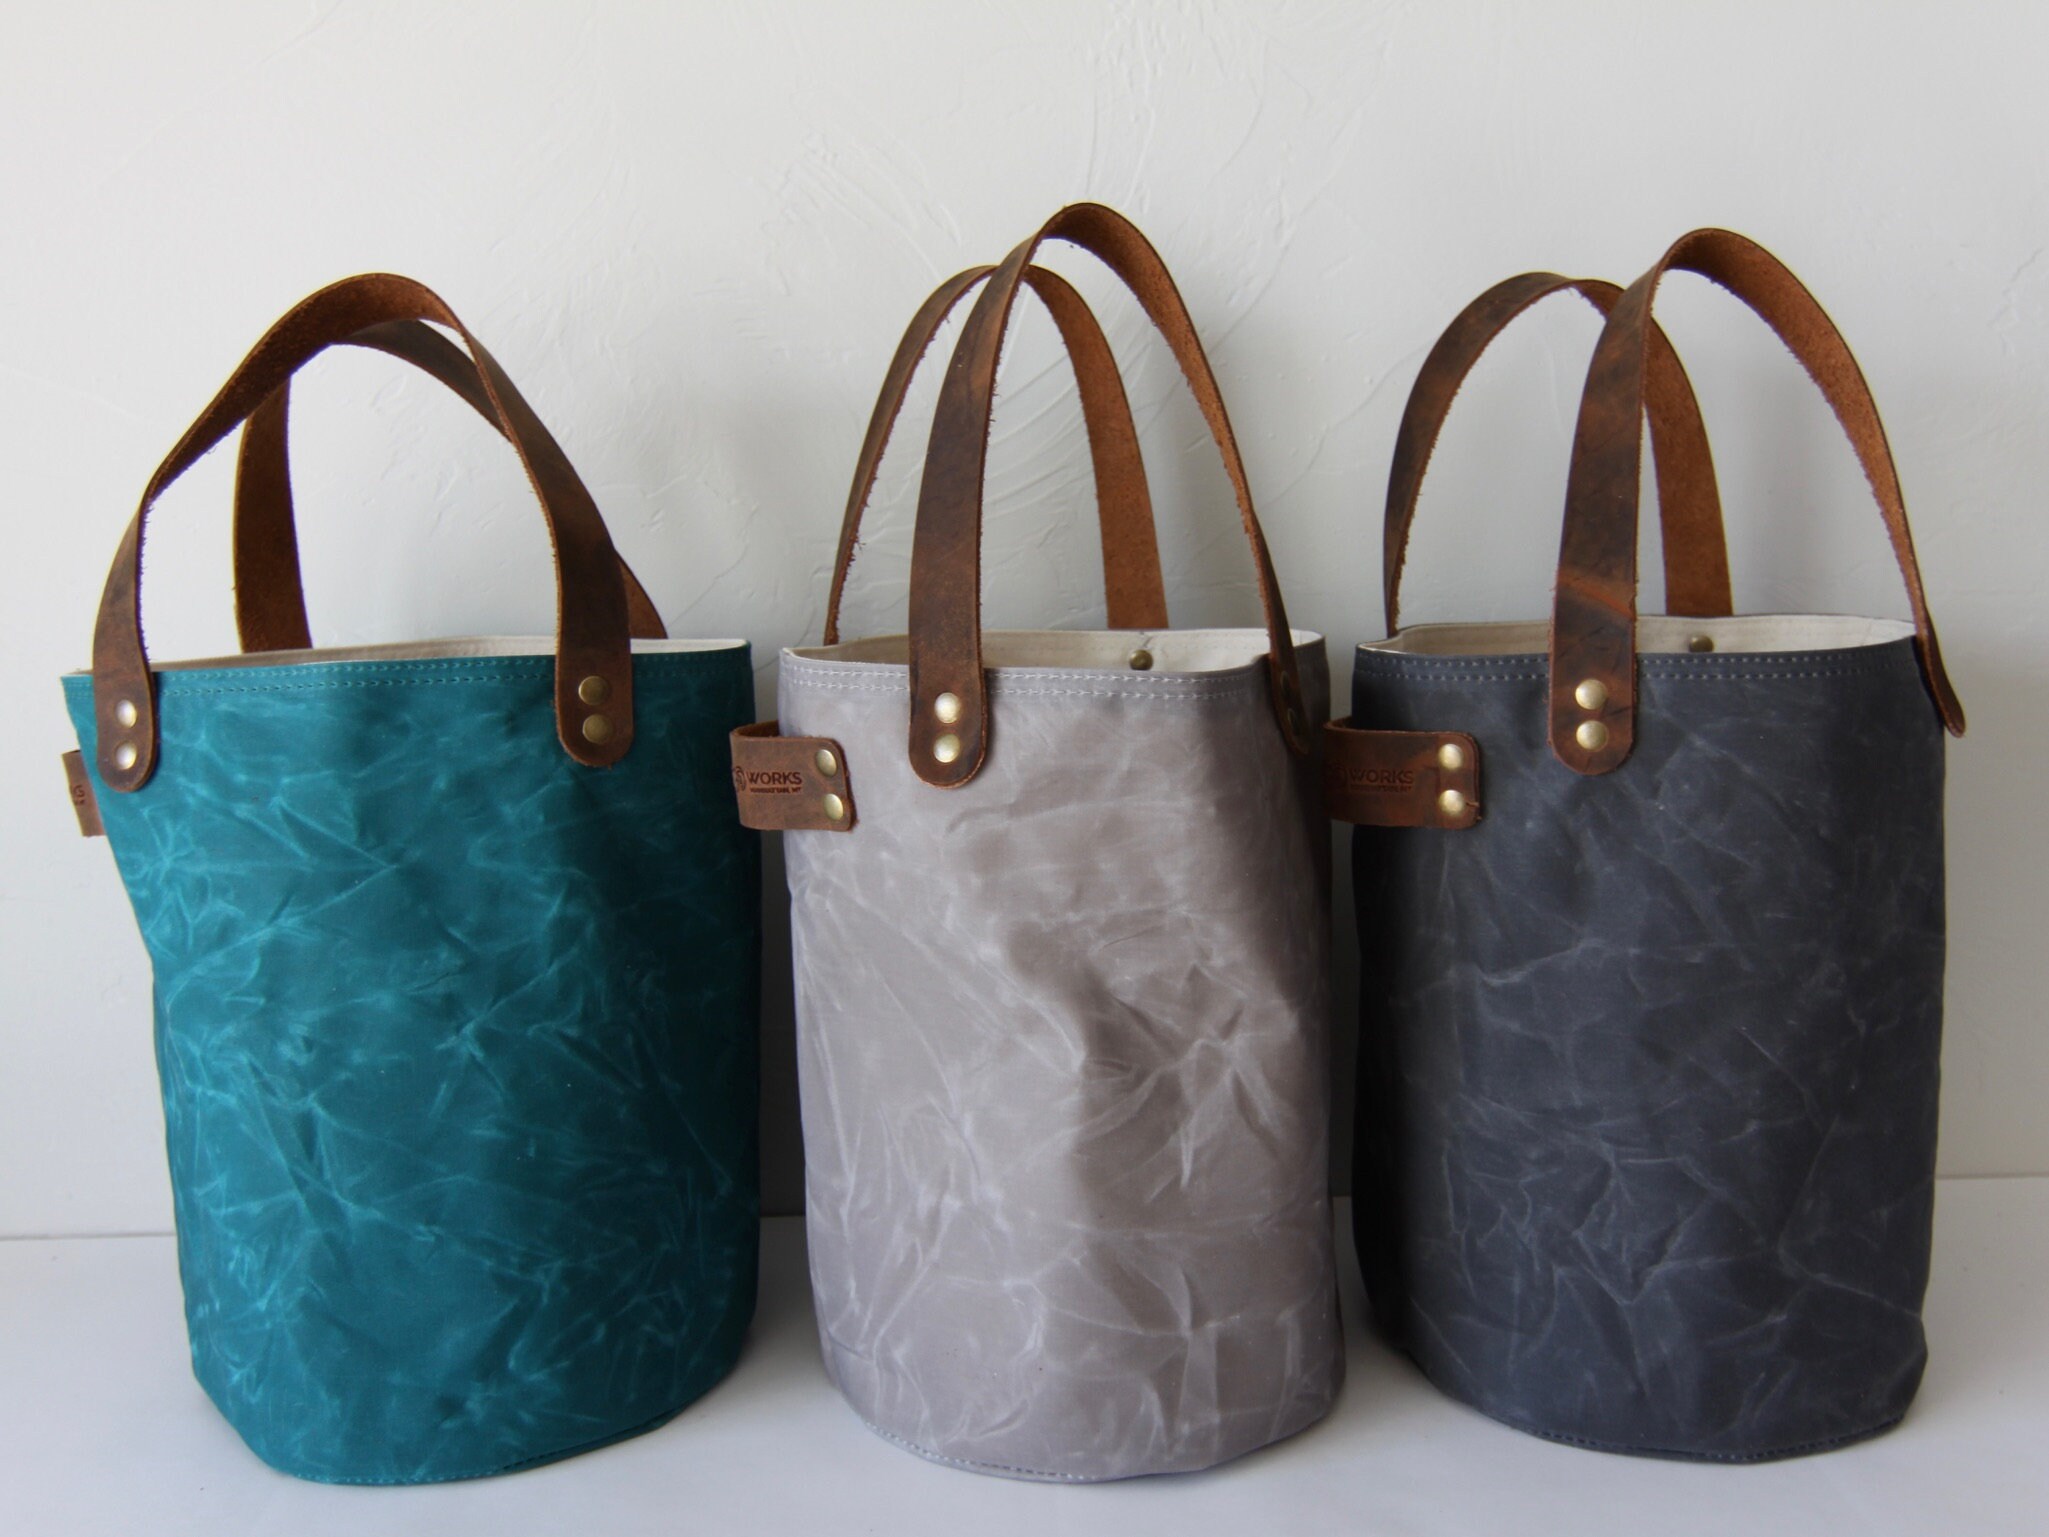 Plaid Waxed Canvas Project Bag, Natural Duck Canvas, Knitting Bag, Crochet Bag, Drawstring Bag